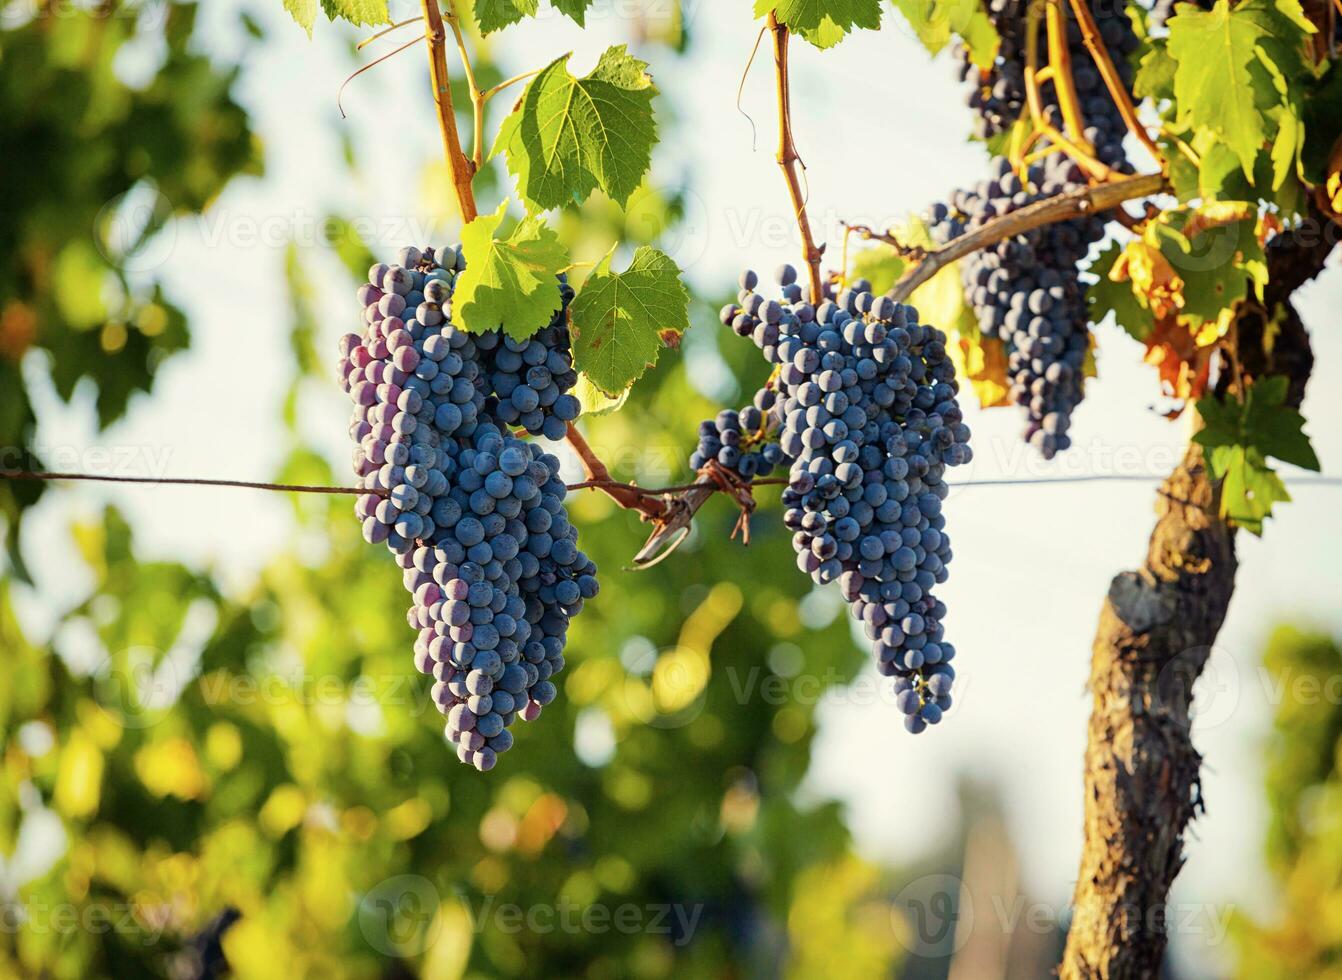 toscano viñedo con rojo uvas. foto